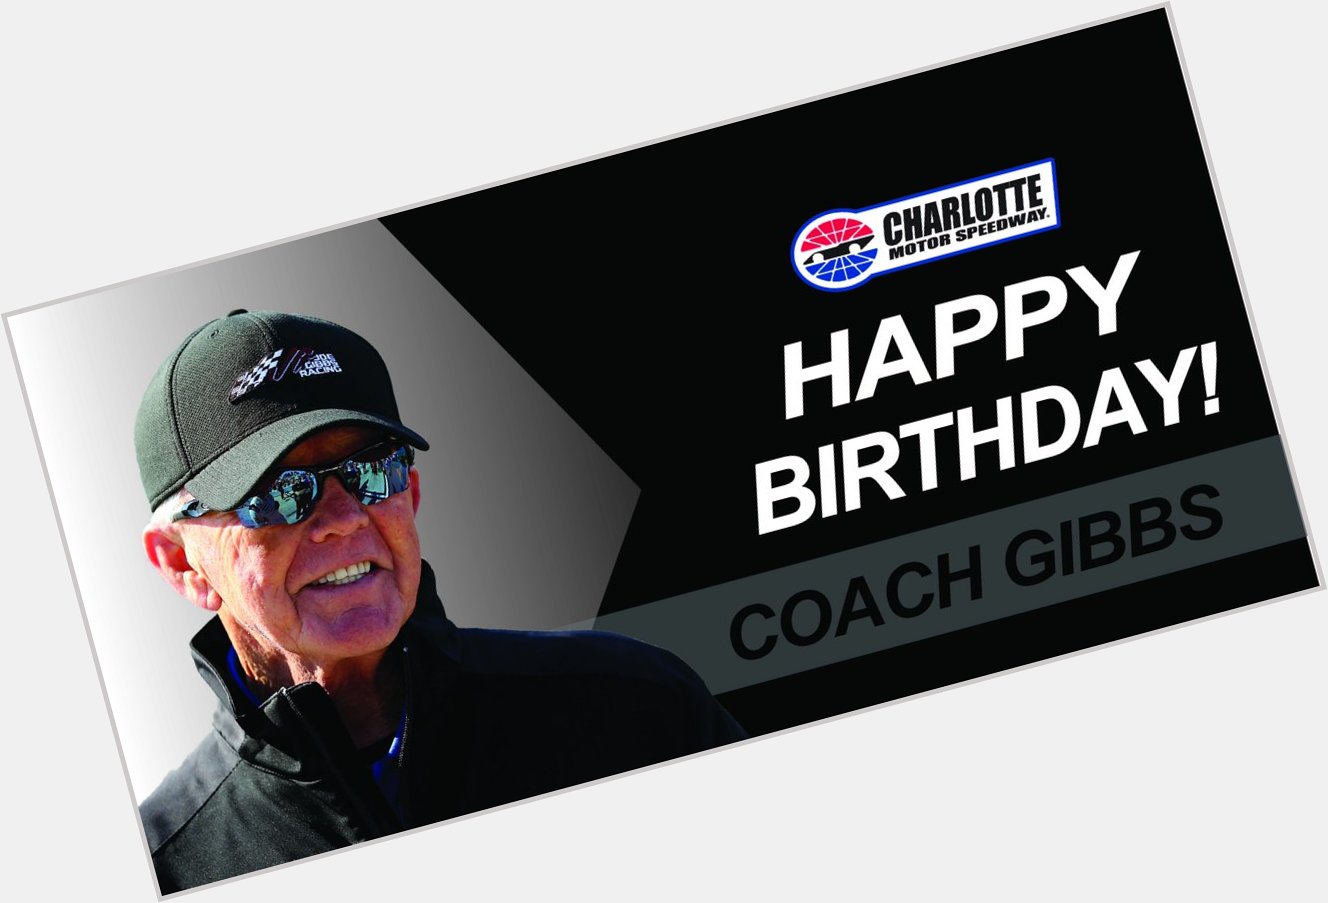 To wish Coach Joe Gibbs a Happy Birthday! 